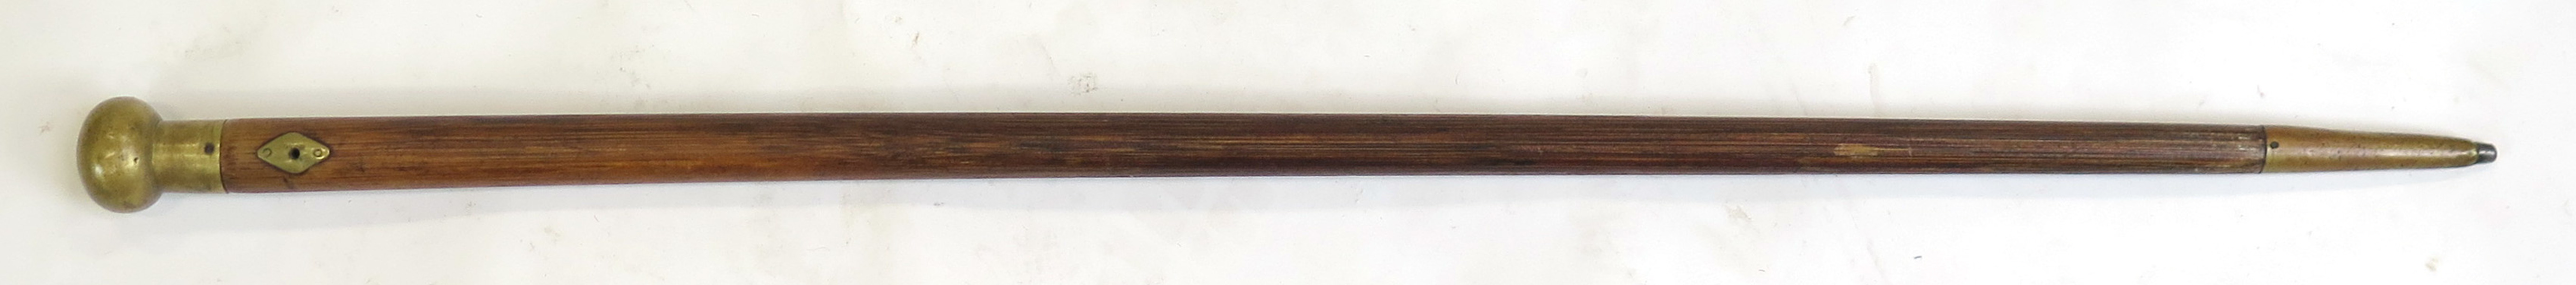 Käpp, trä med mässingbeslag, 1800-talets mitt, _12321a_lg.jpeg